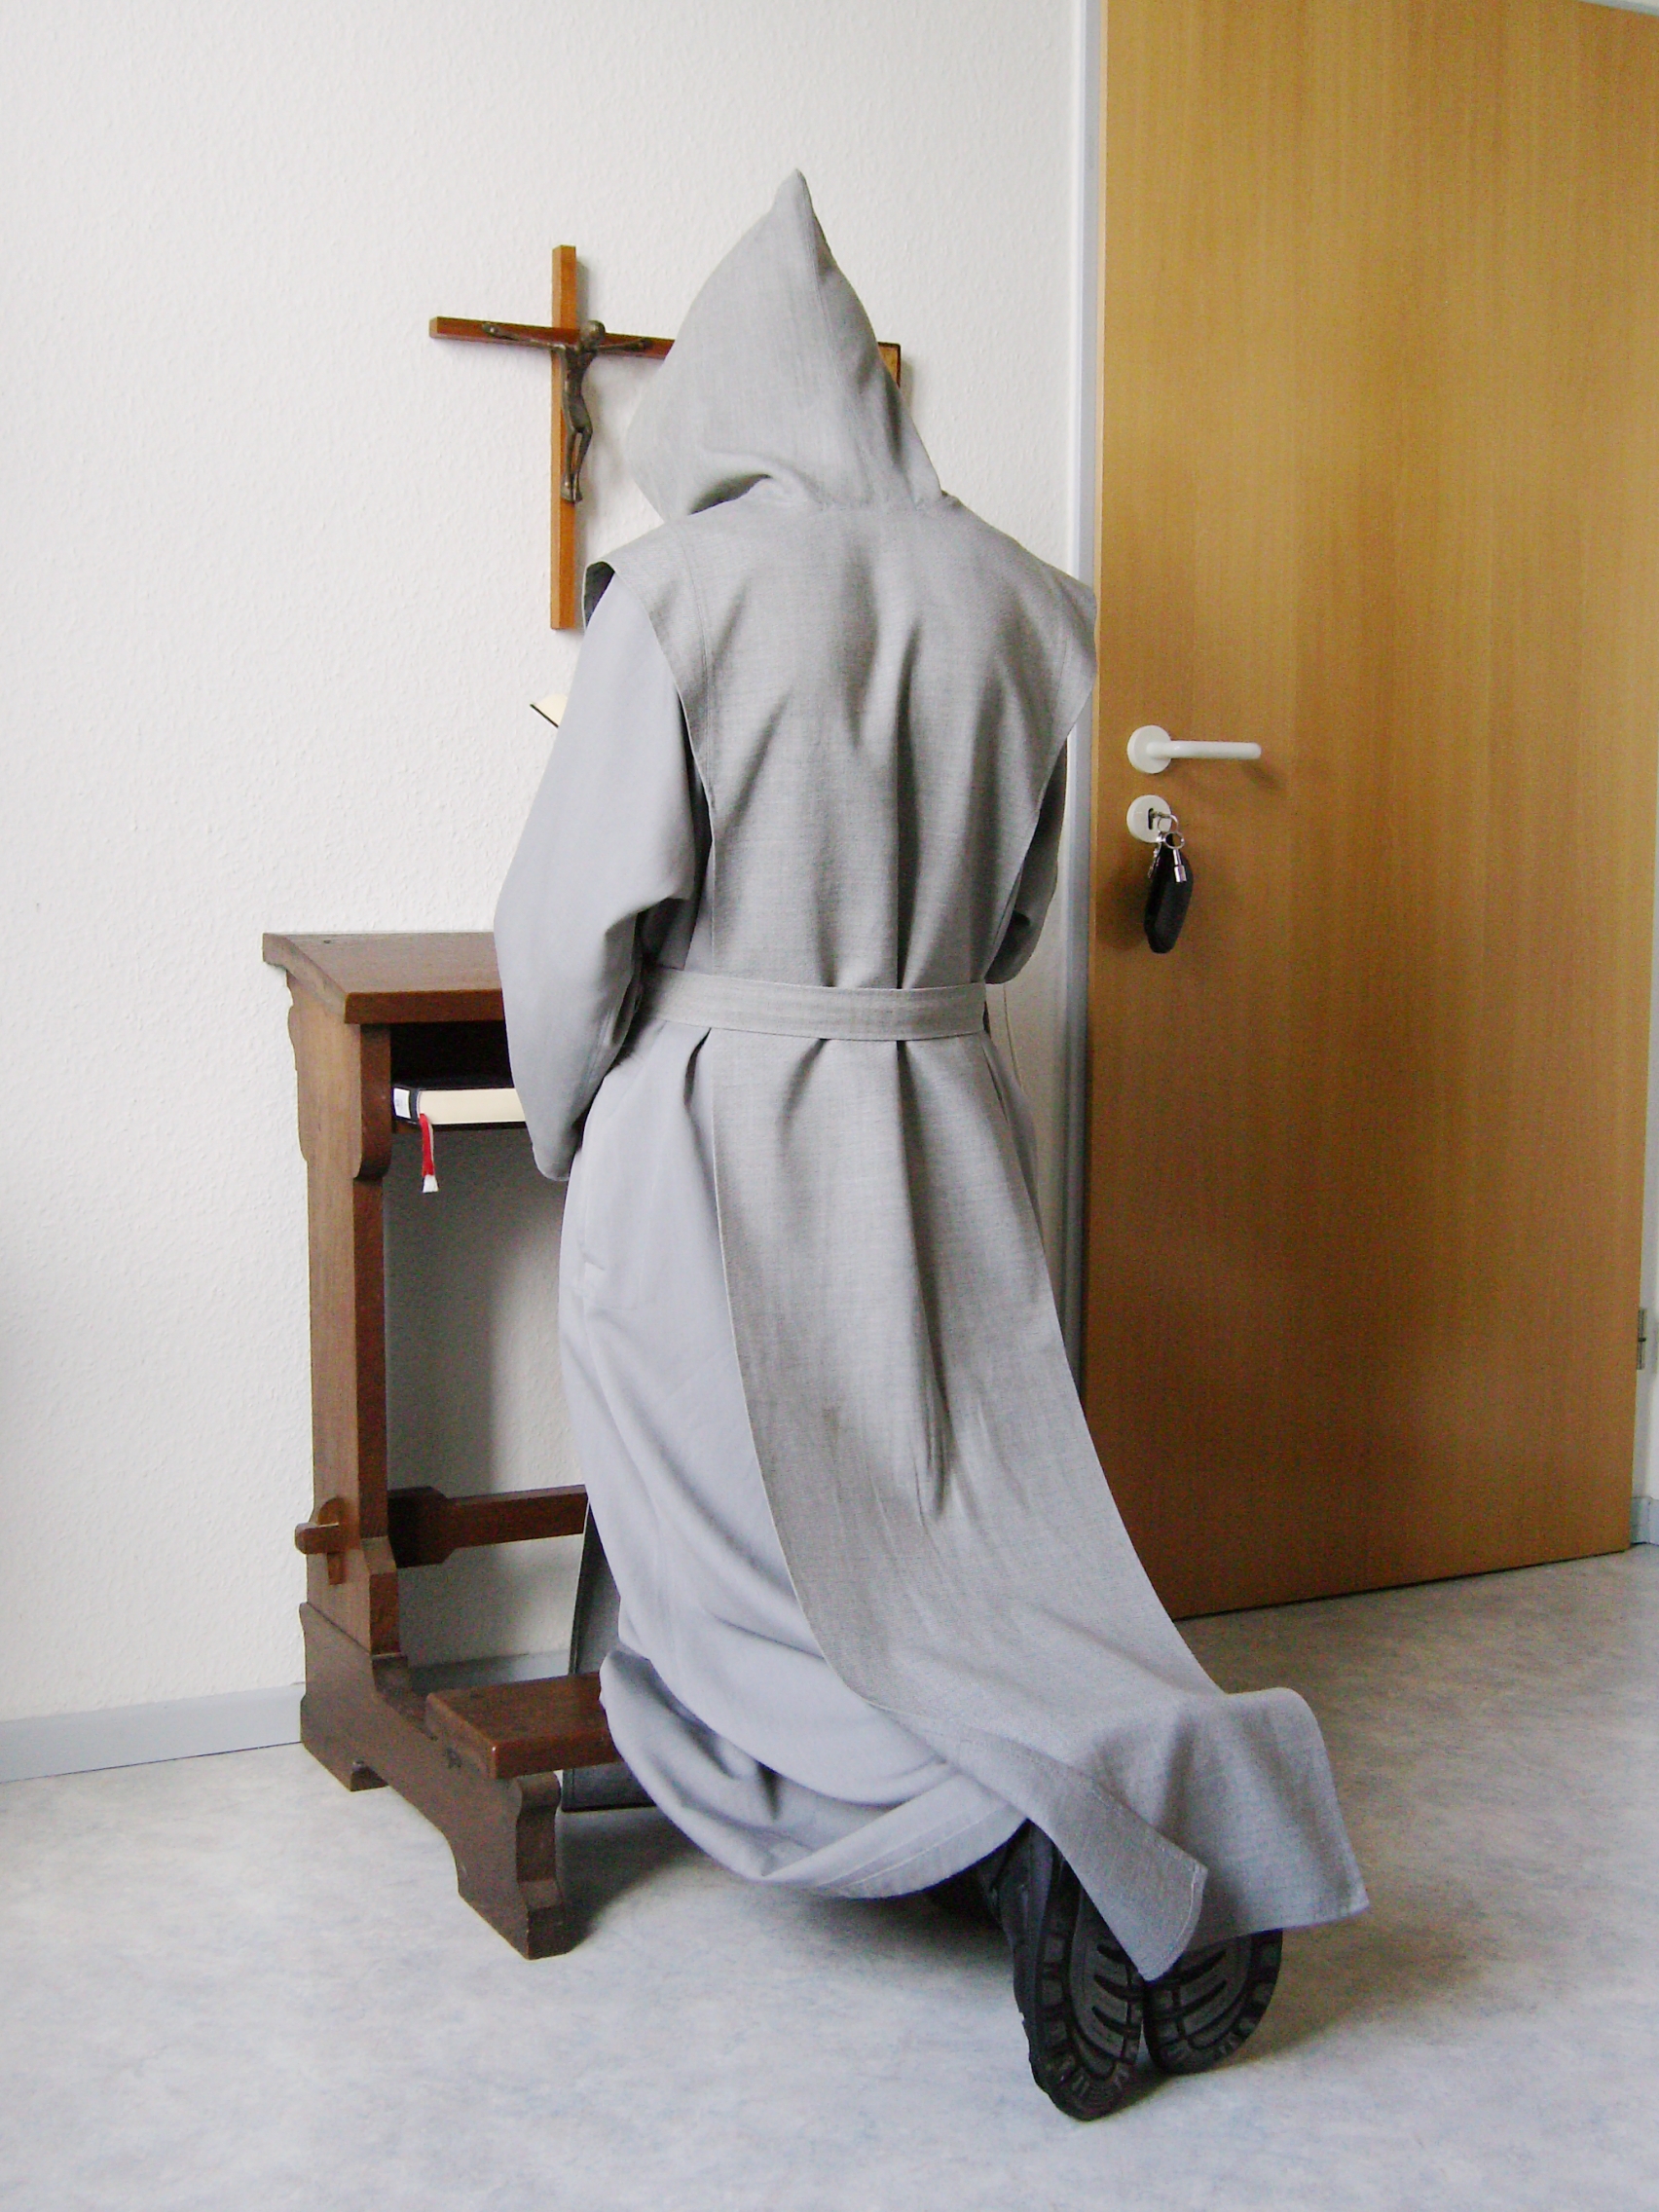 Trappist_praying_2007-08-20_dti